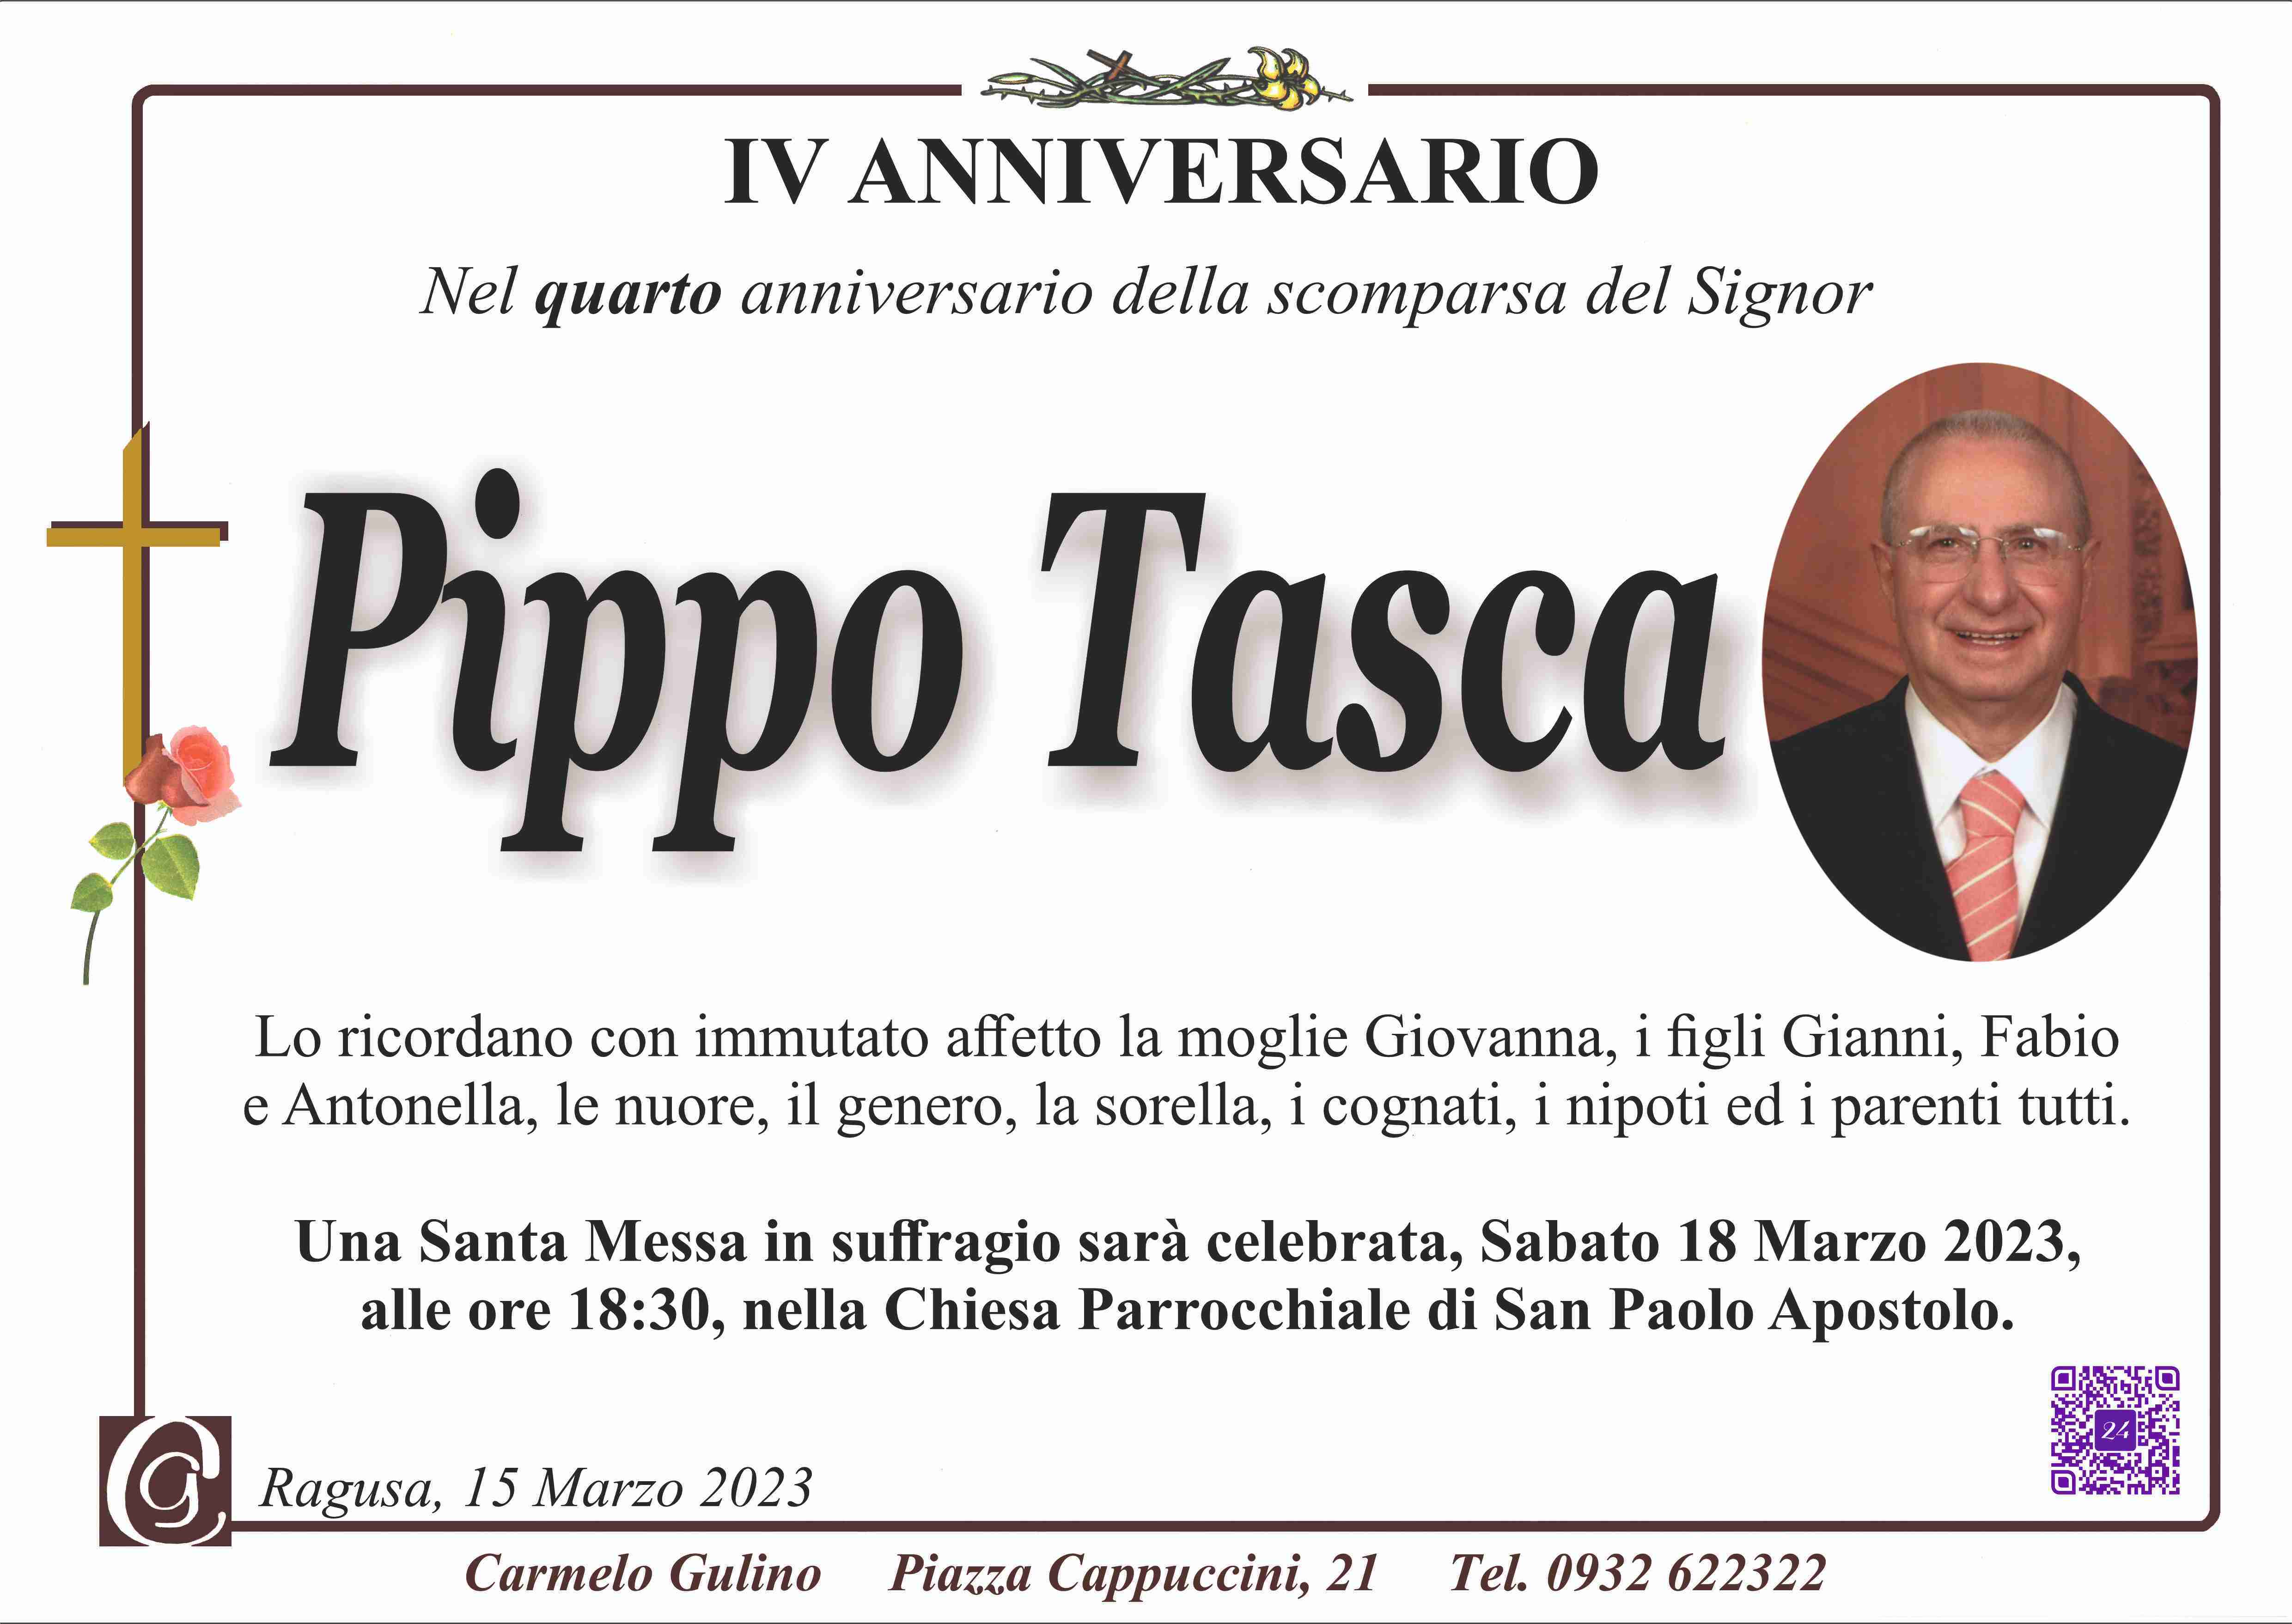 Pippo Tasca